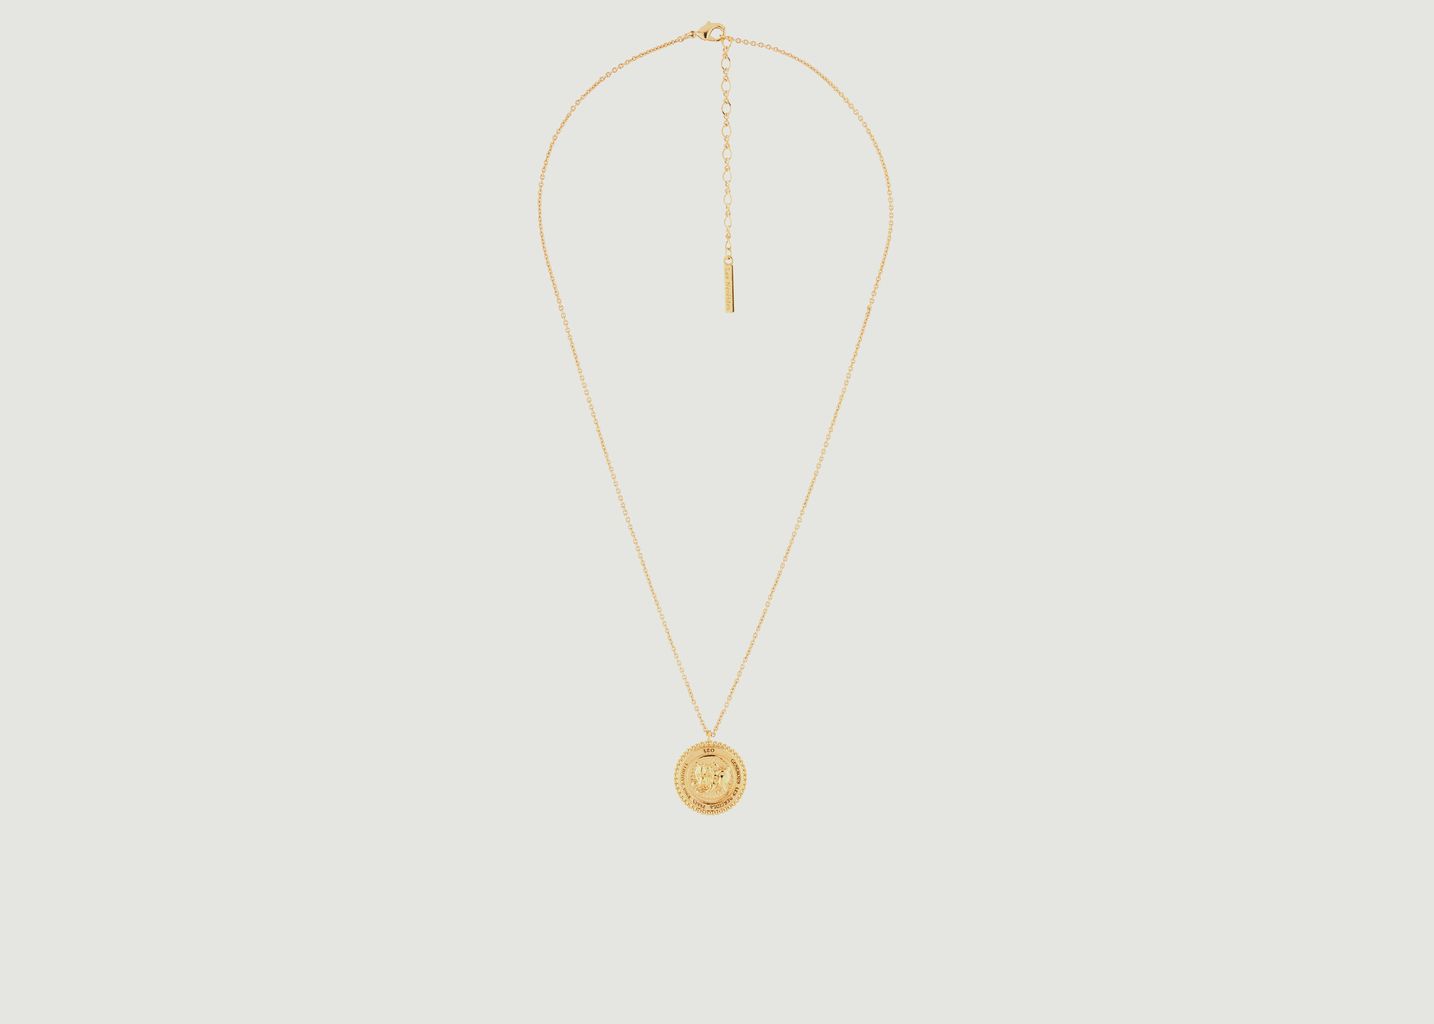 Leo astrological sign necklace with pendant - Les Néréides